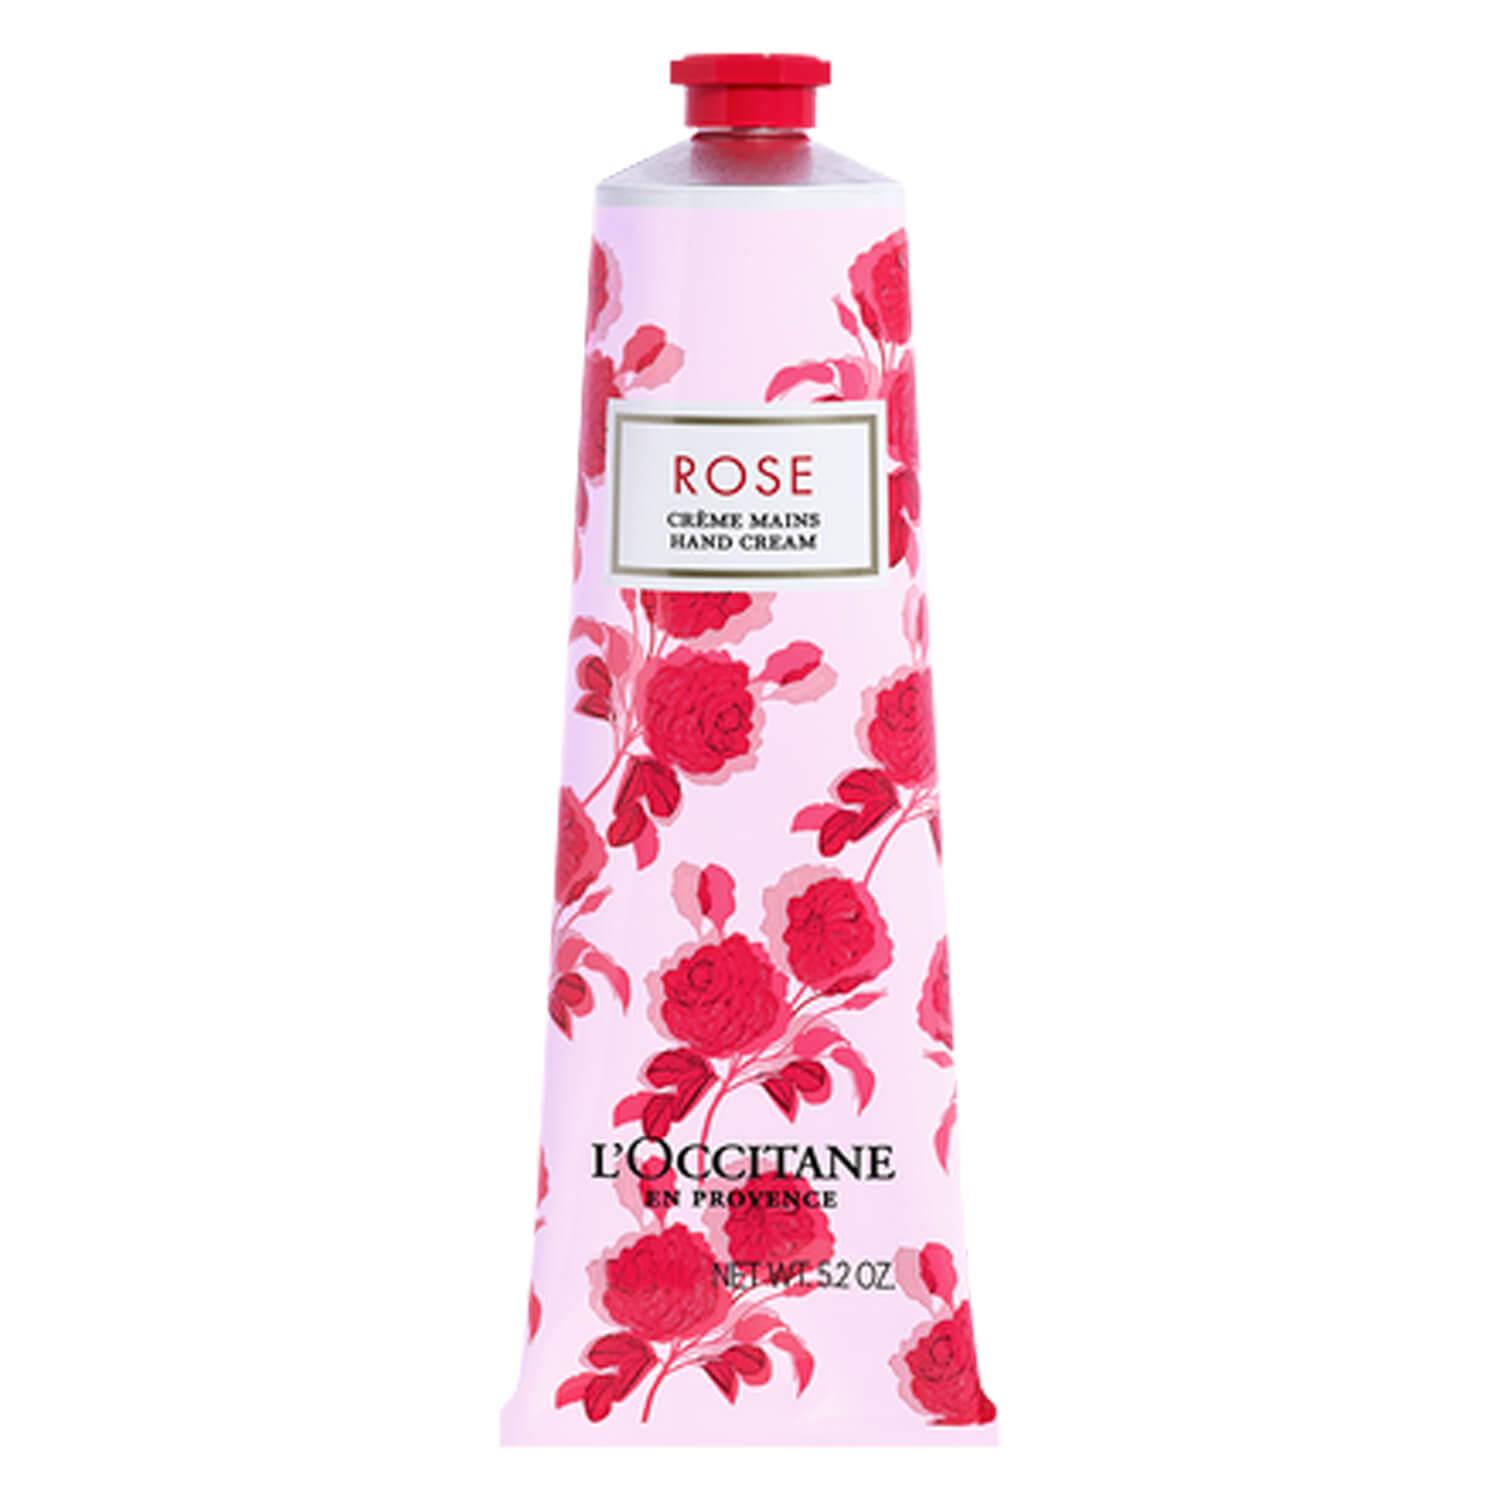 L'Occitane Hand - Rose Crème Mains